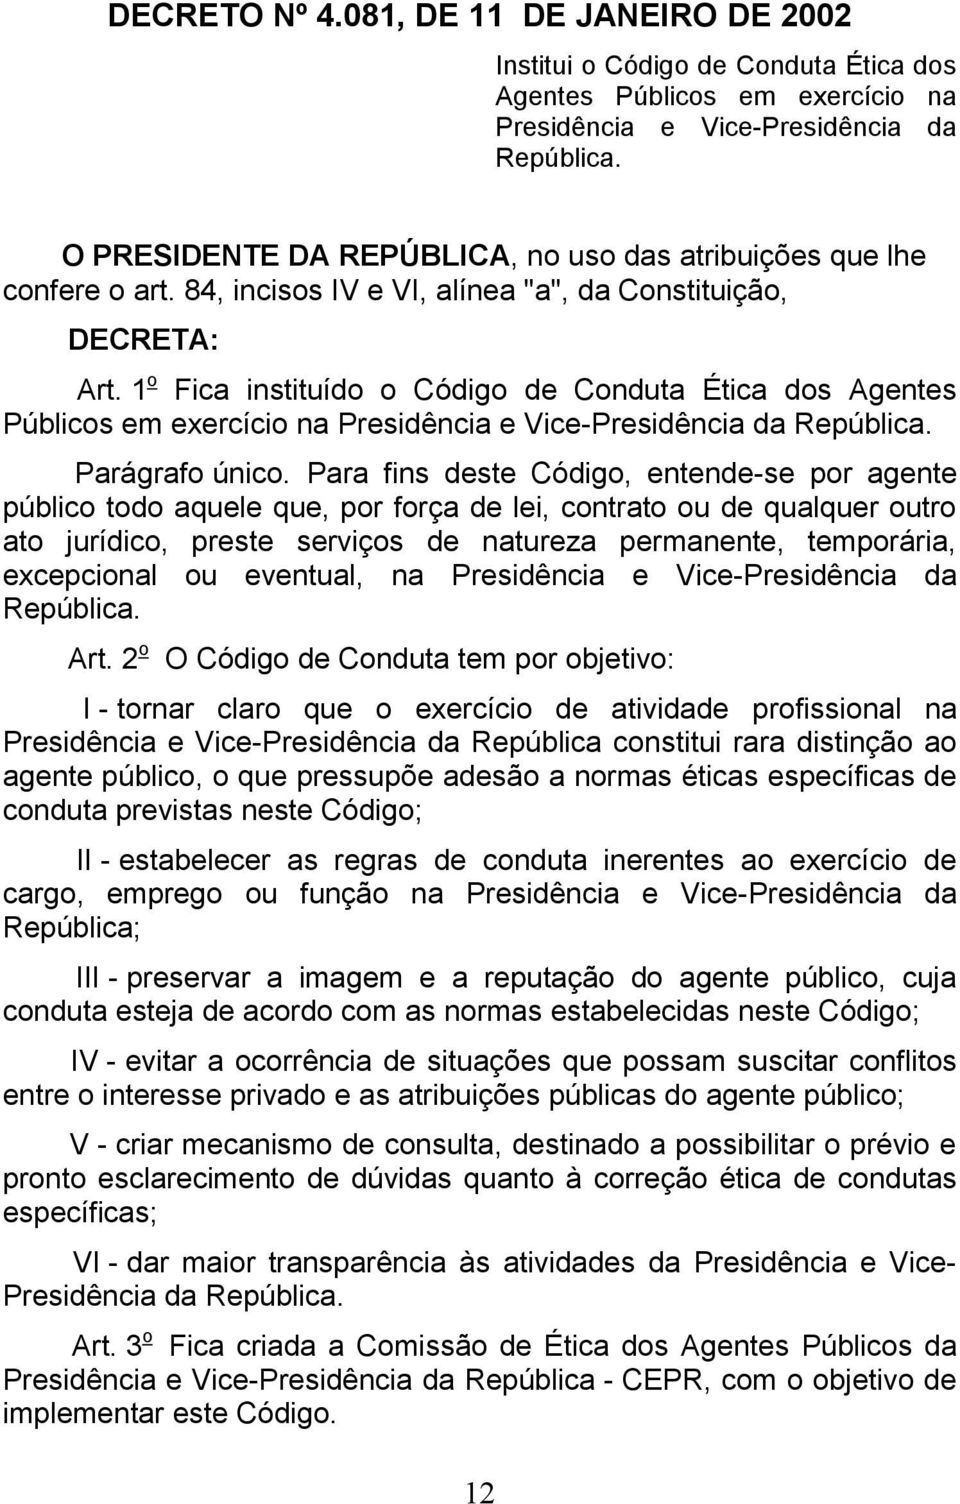 1 o Fica instituído o Código de Conduta Ética dos Agentes Públicos em exercício na Presidência e Vice-Presidência da República. Parágrafo único.